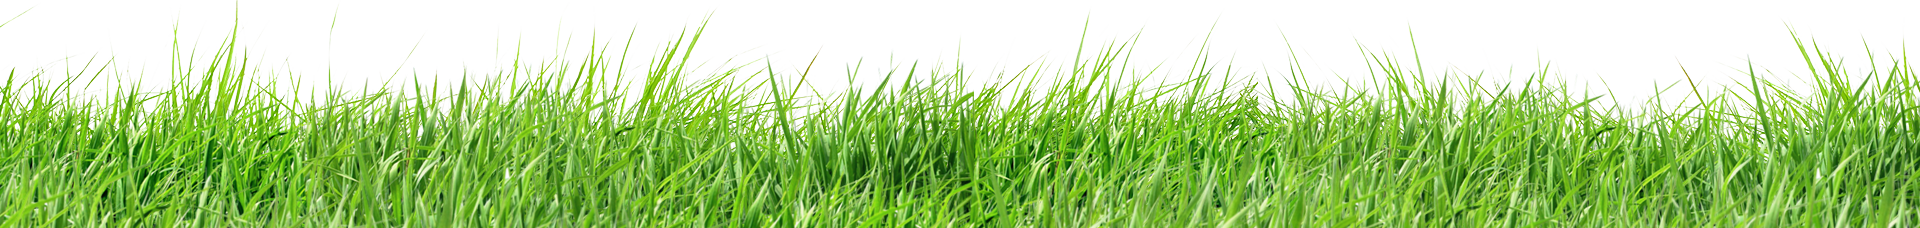 bg grass